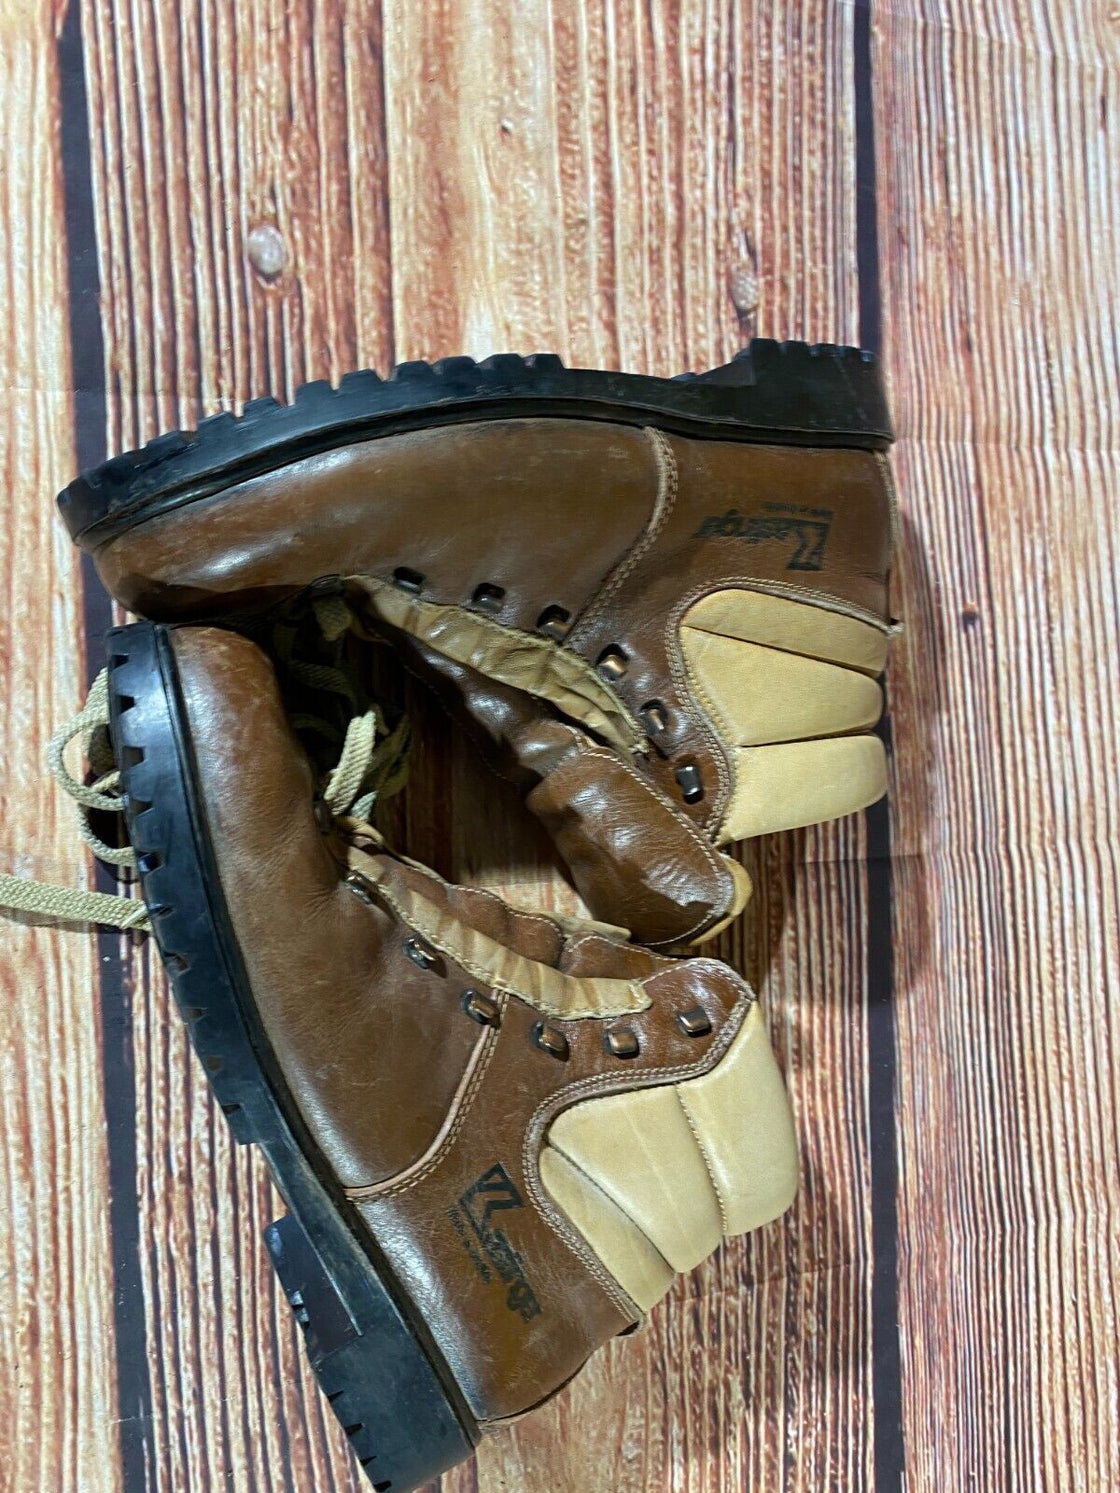 KASTINGER Hiking Boots Trekking Trails Leather Shoes Unisex Size EU44, US10, UK9